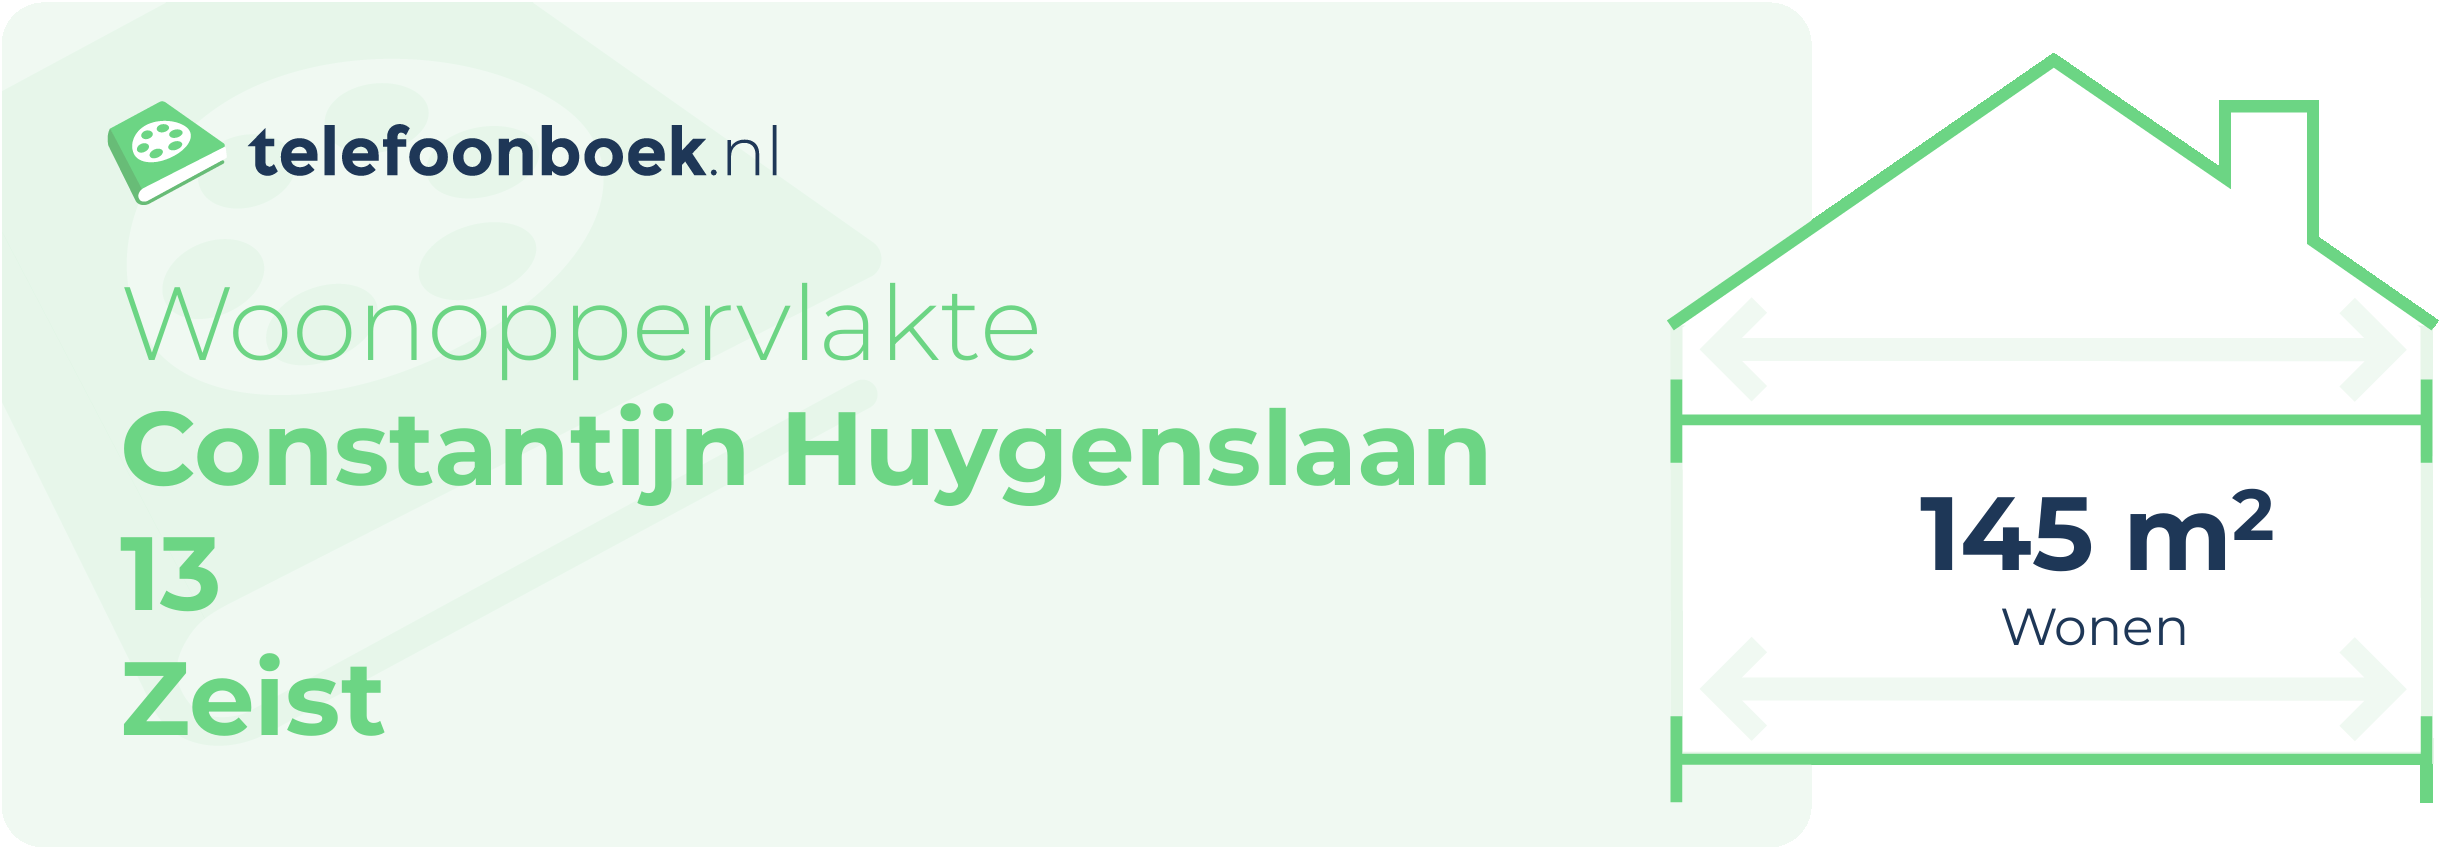 Woonoppervlakte Constantijn Huygenslaan 13 Zeist